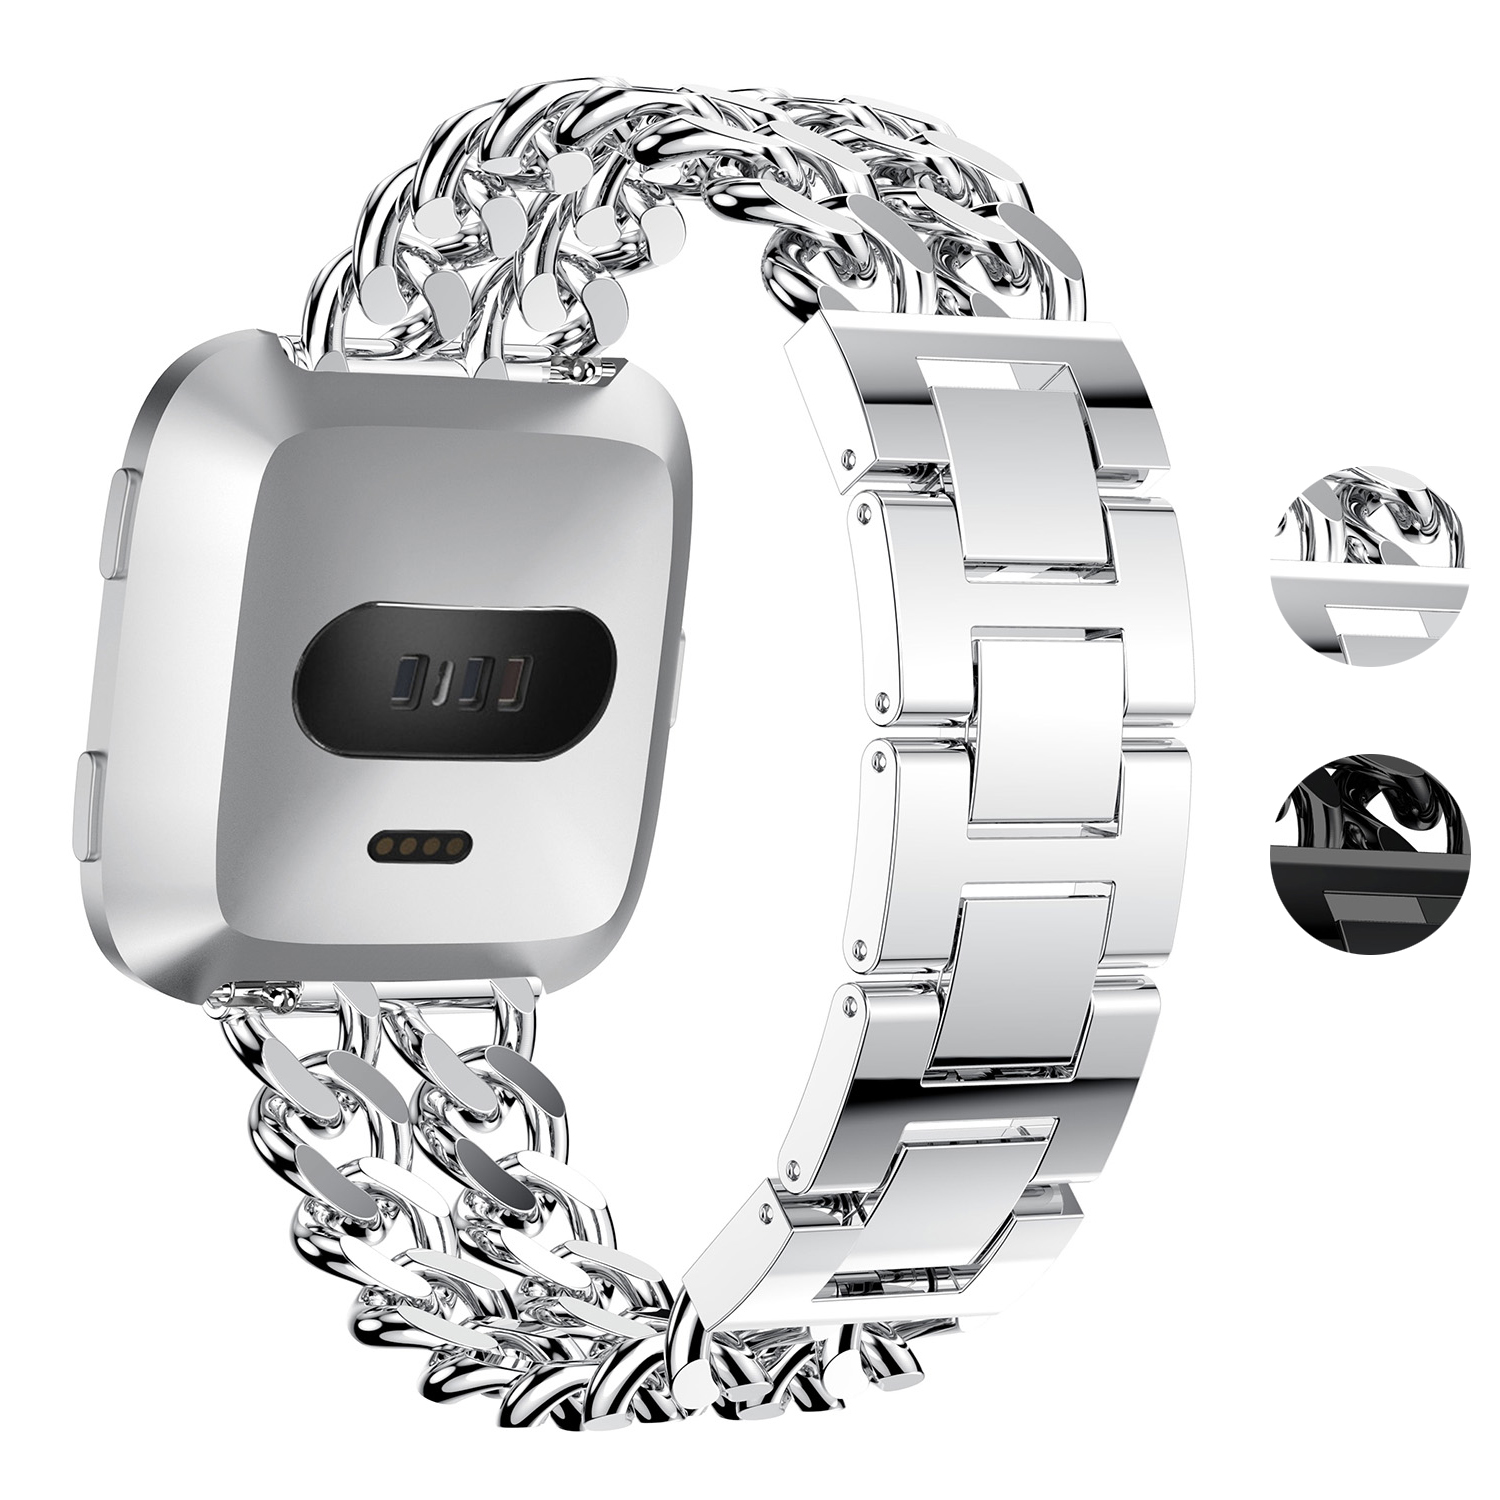 fitbit chain bracelet